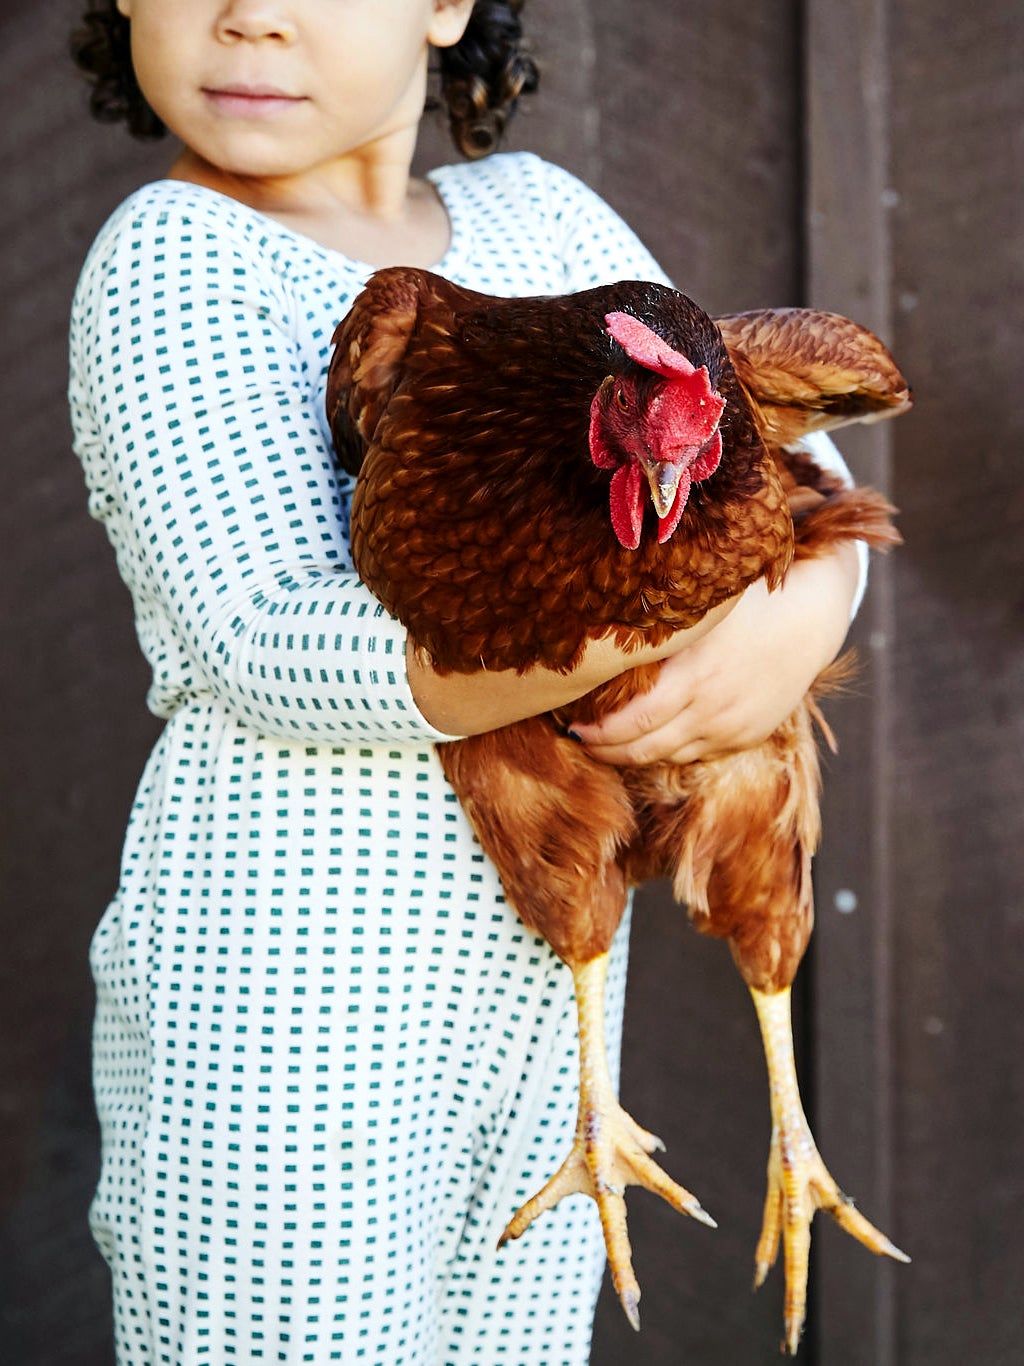 Child holding a chicken